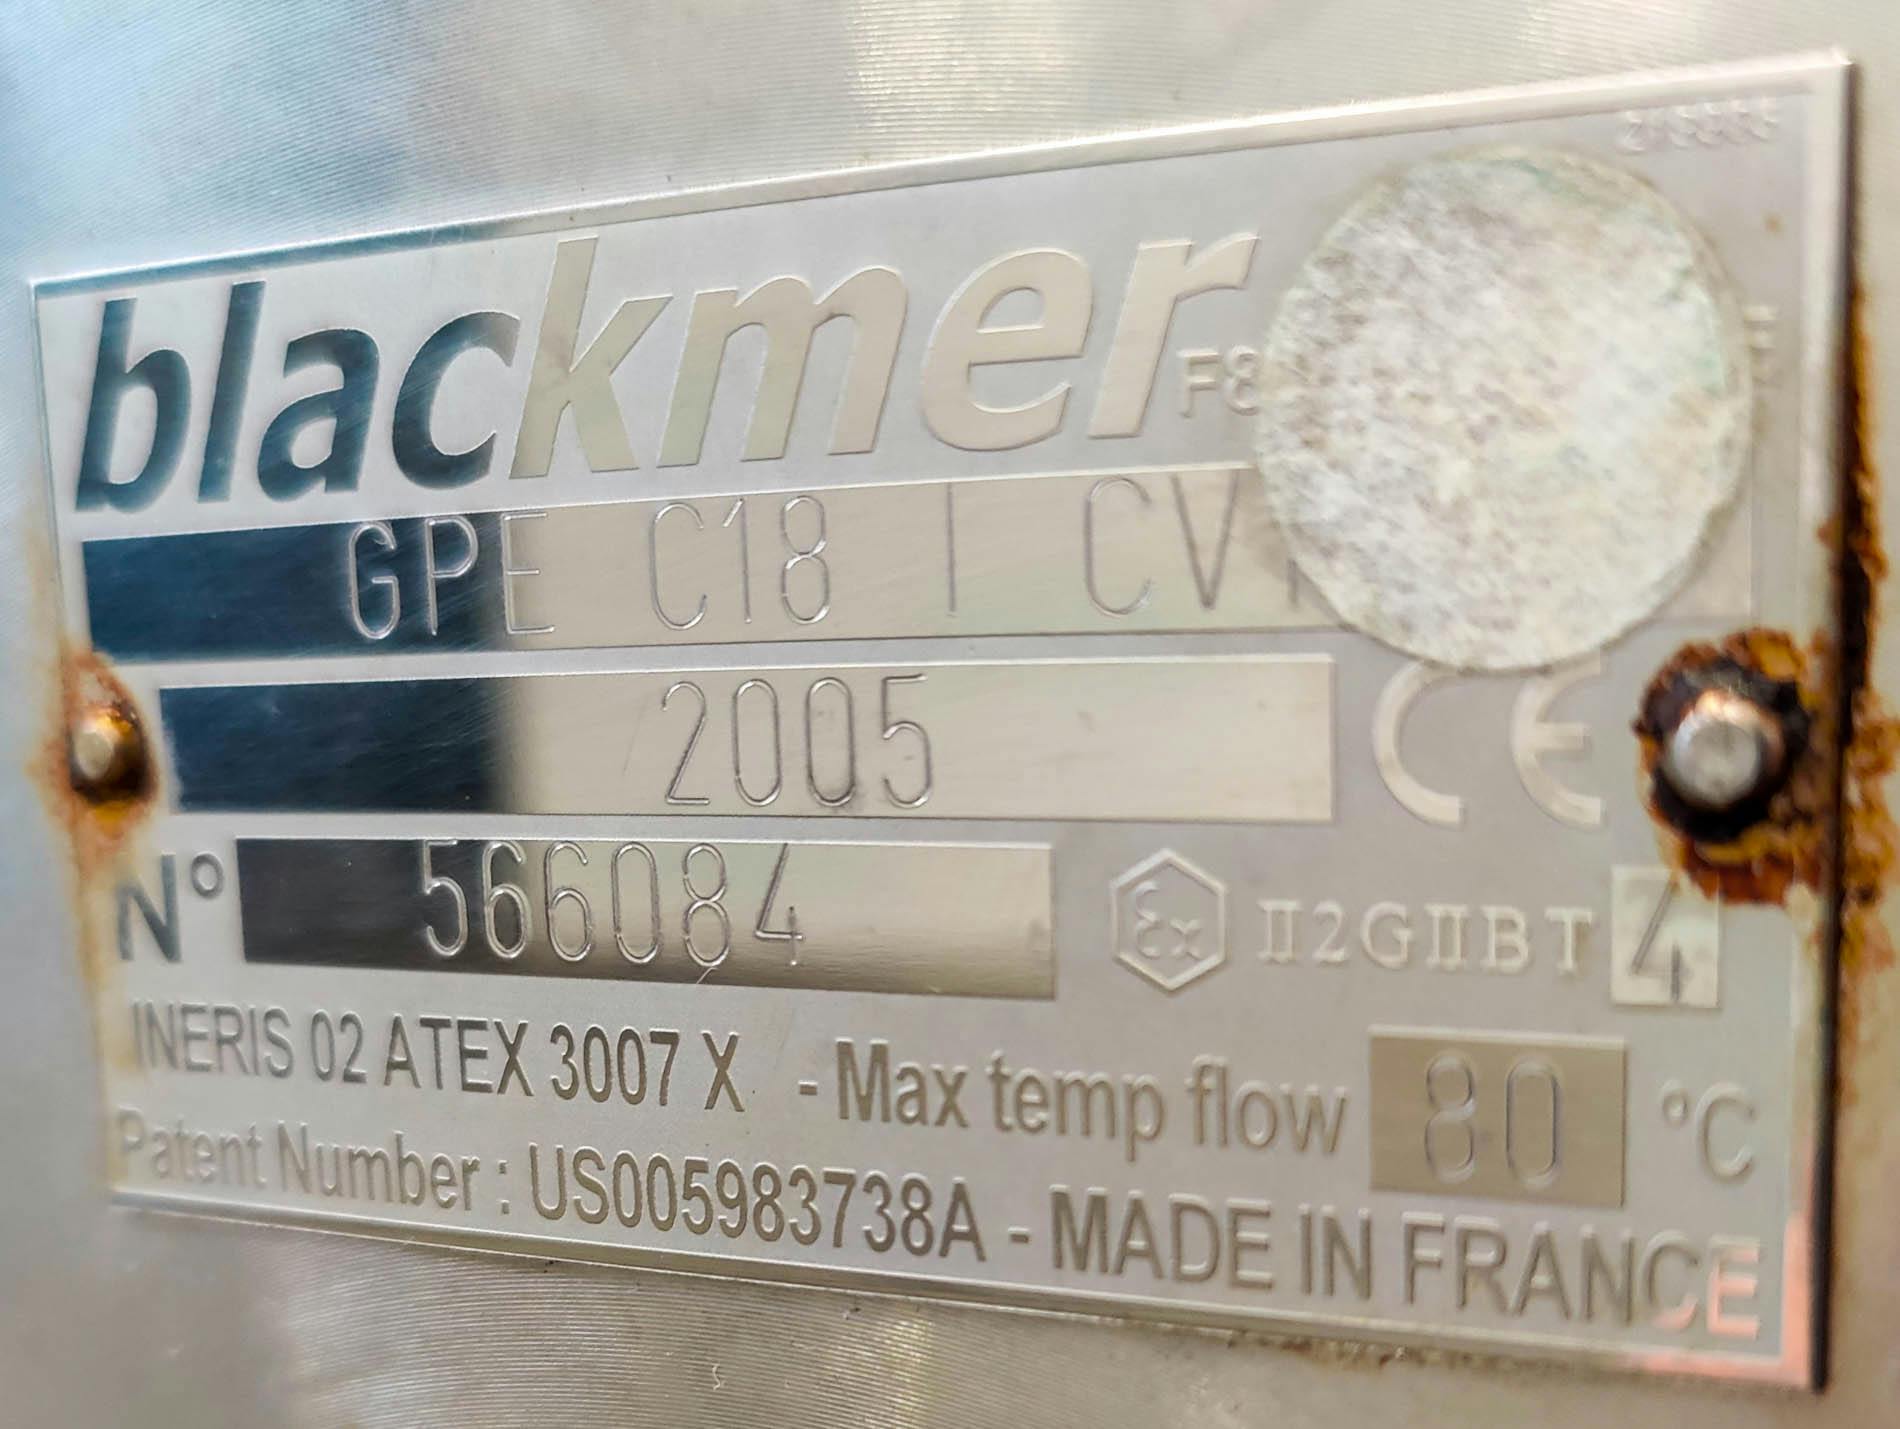 Blackmer GPI C18 I CV - Bomba de parafuso excêntrico - image 11